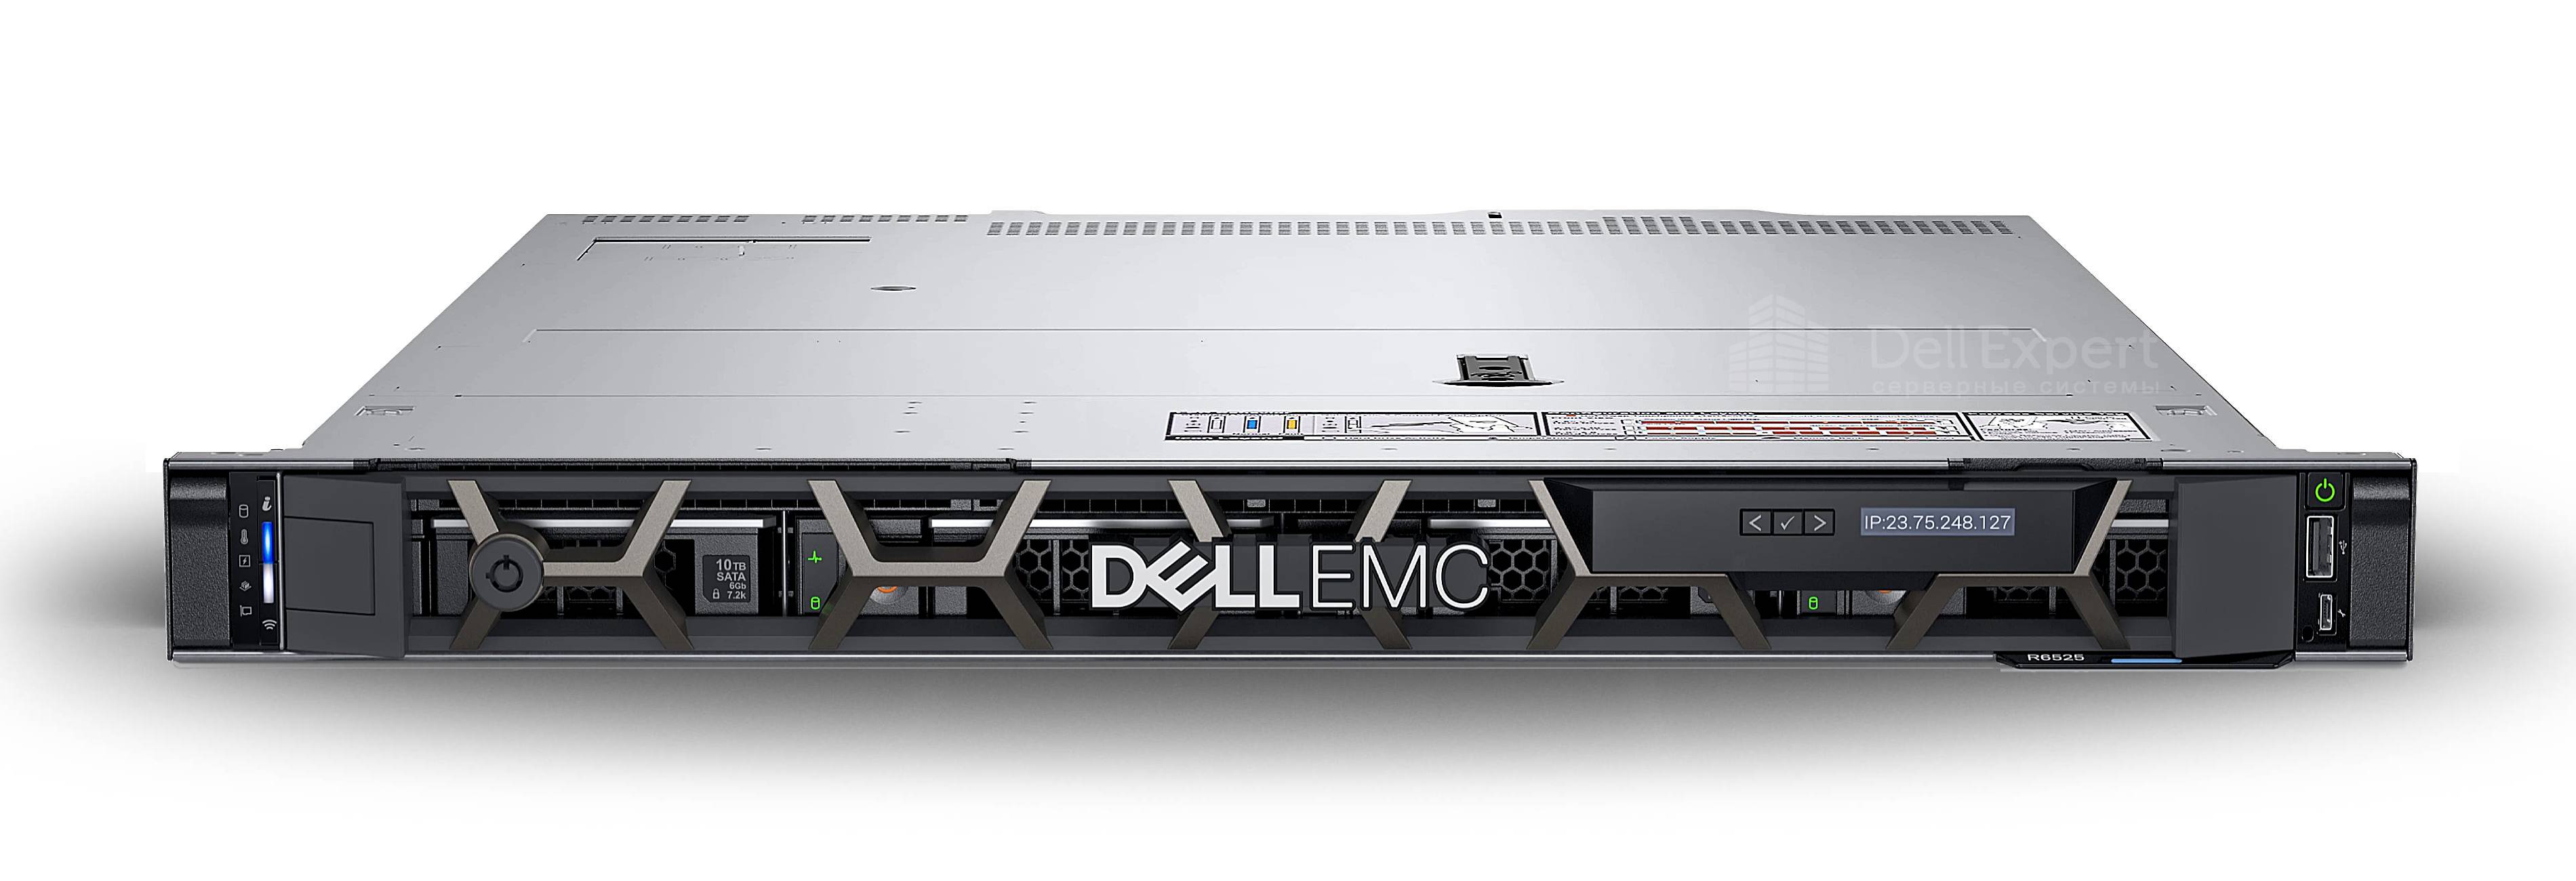 server Dell EMC PowerEdge R6525